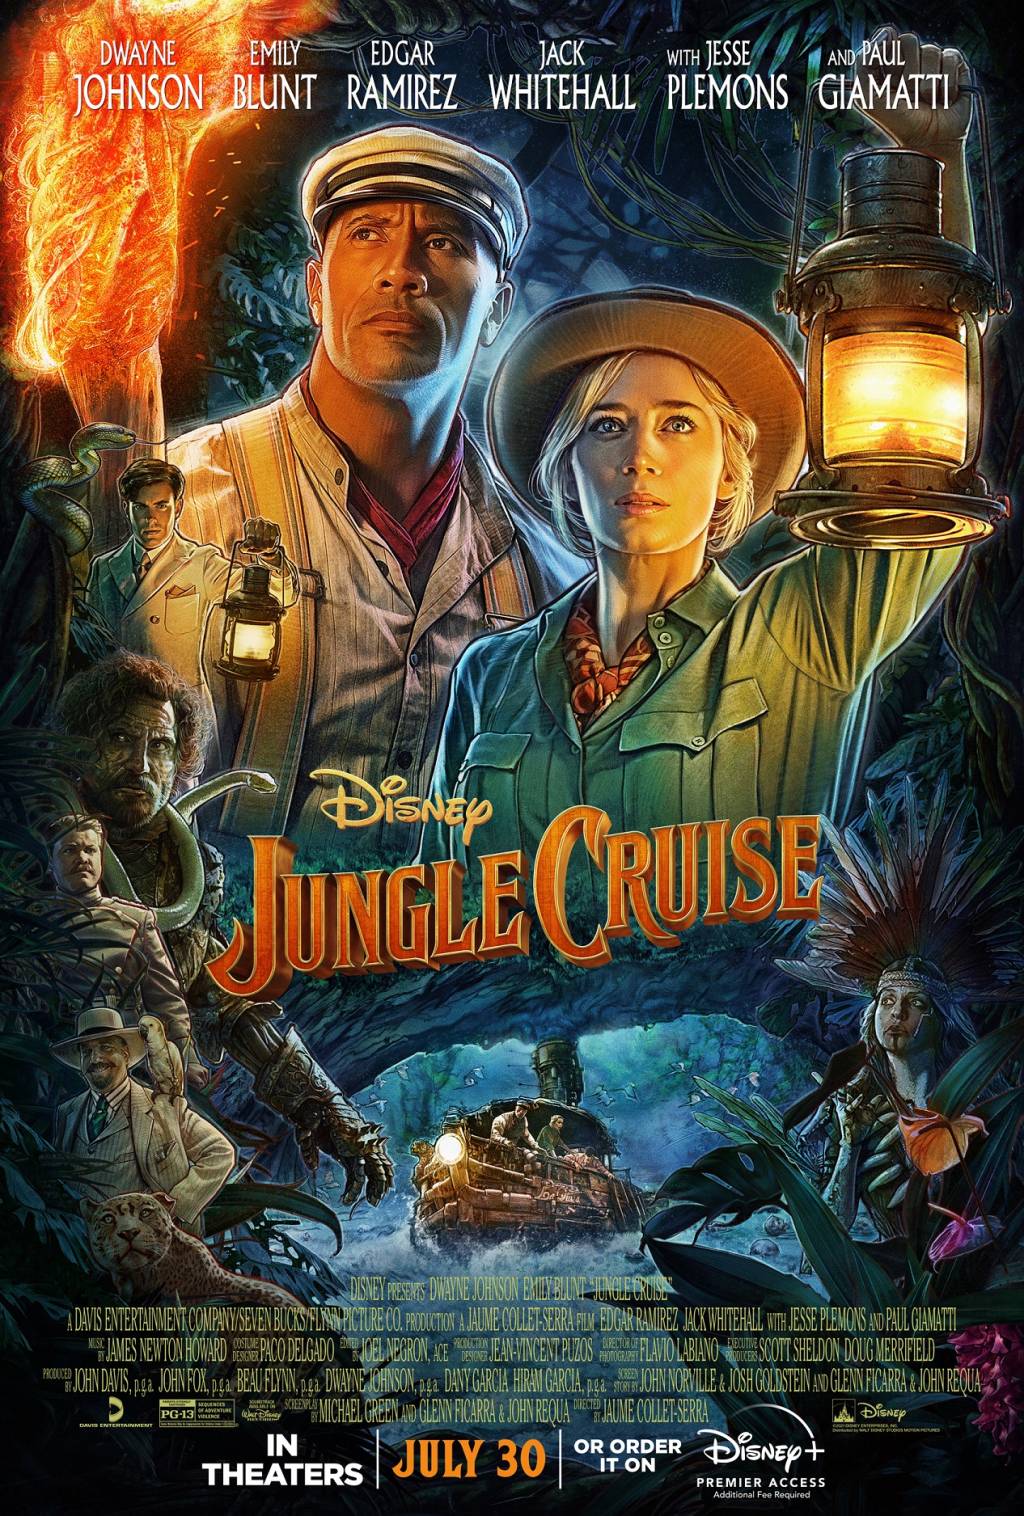 Capa do filme Jungle Cruise mostra os atores Dwayne Johnson e Emily Blunt com roupa de exploradores